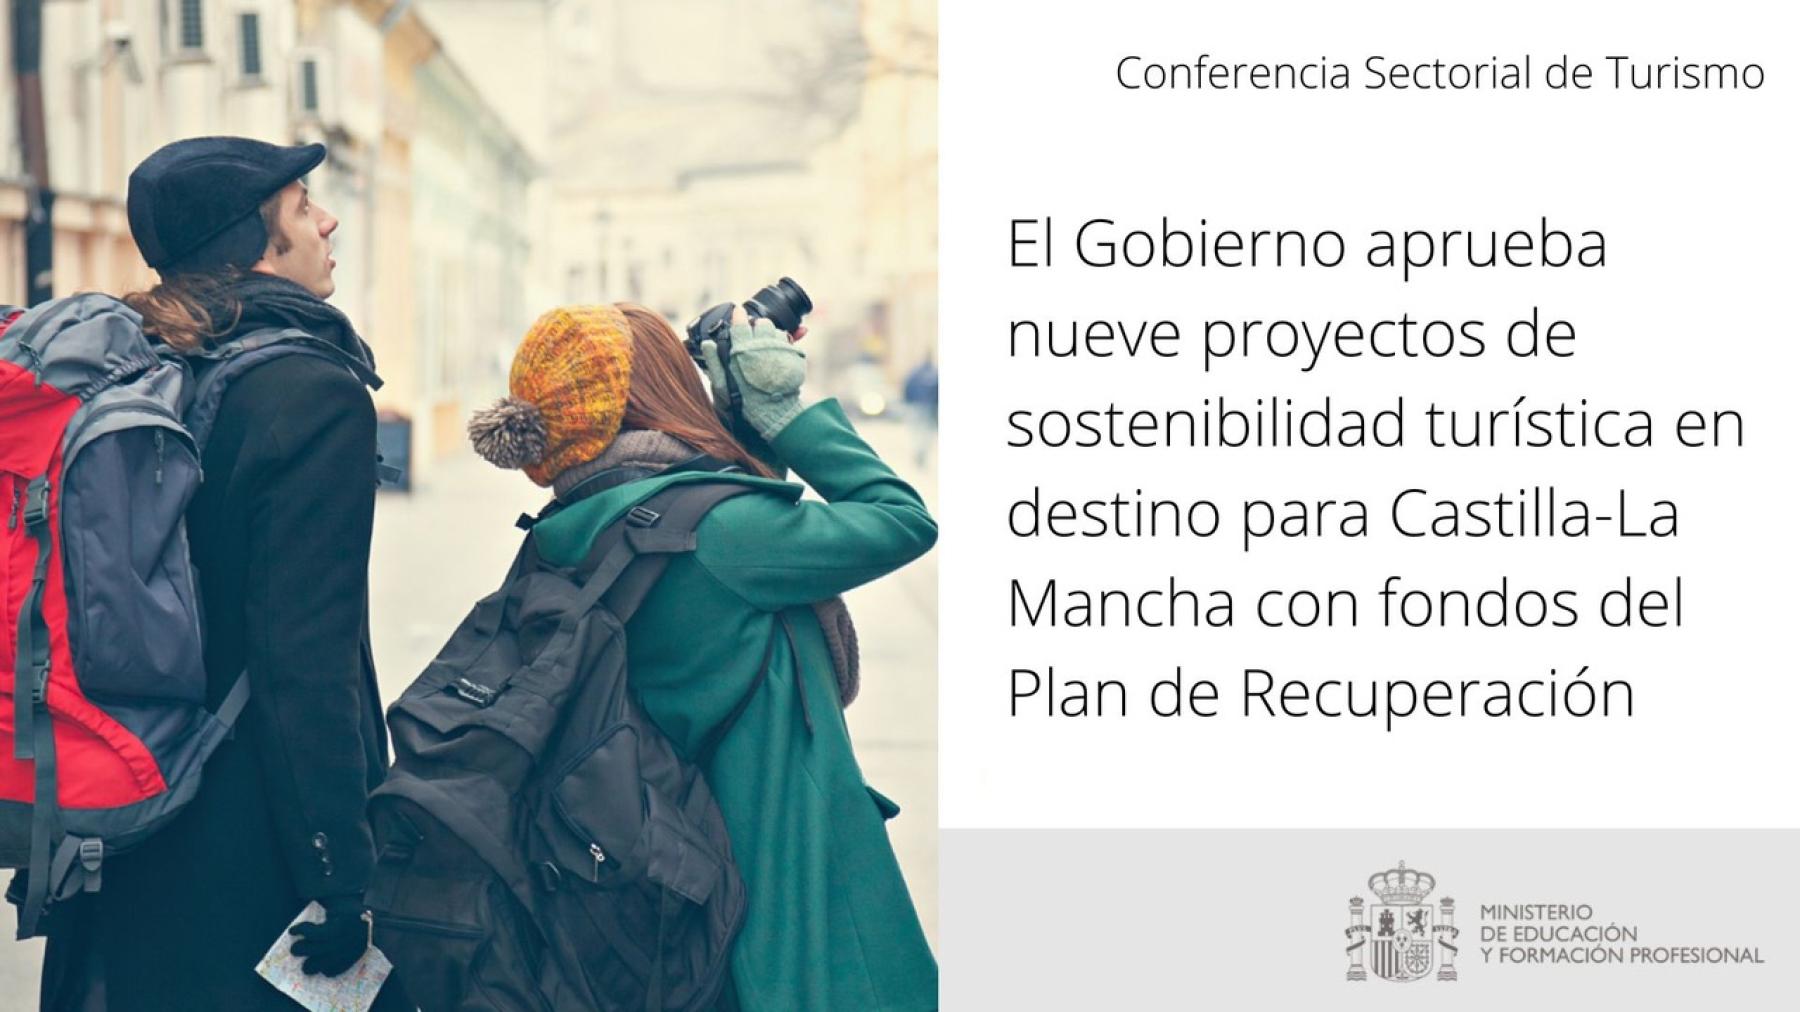 El Gobierno aprueba nueve proyectos de sostenibilidad turística en destino para Castilla-La Mancha con fondos del Plan de Recuperación